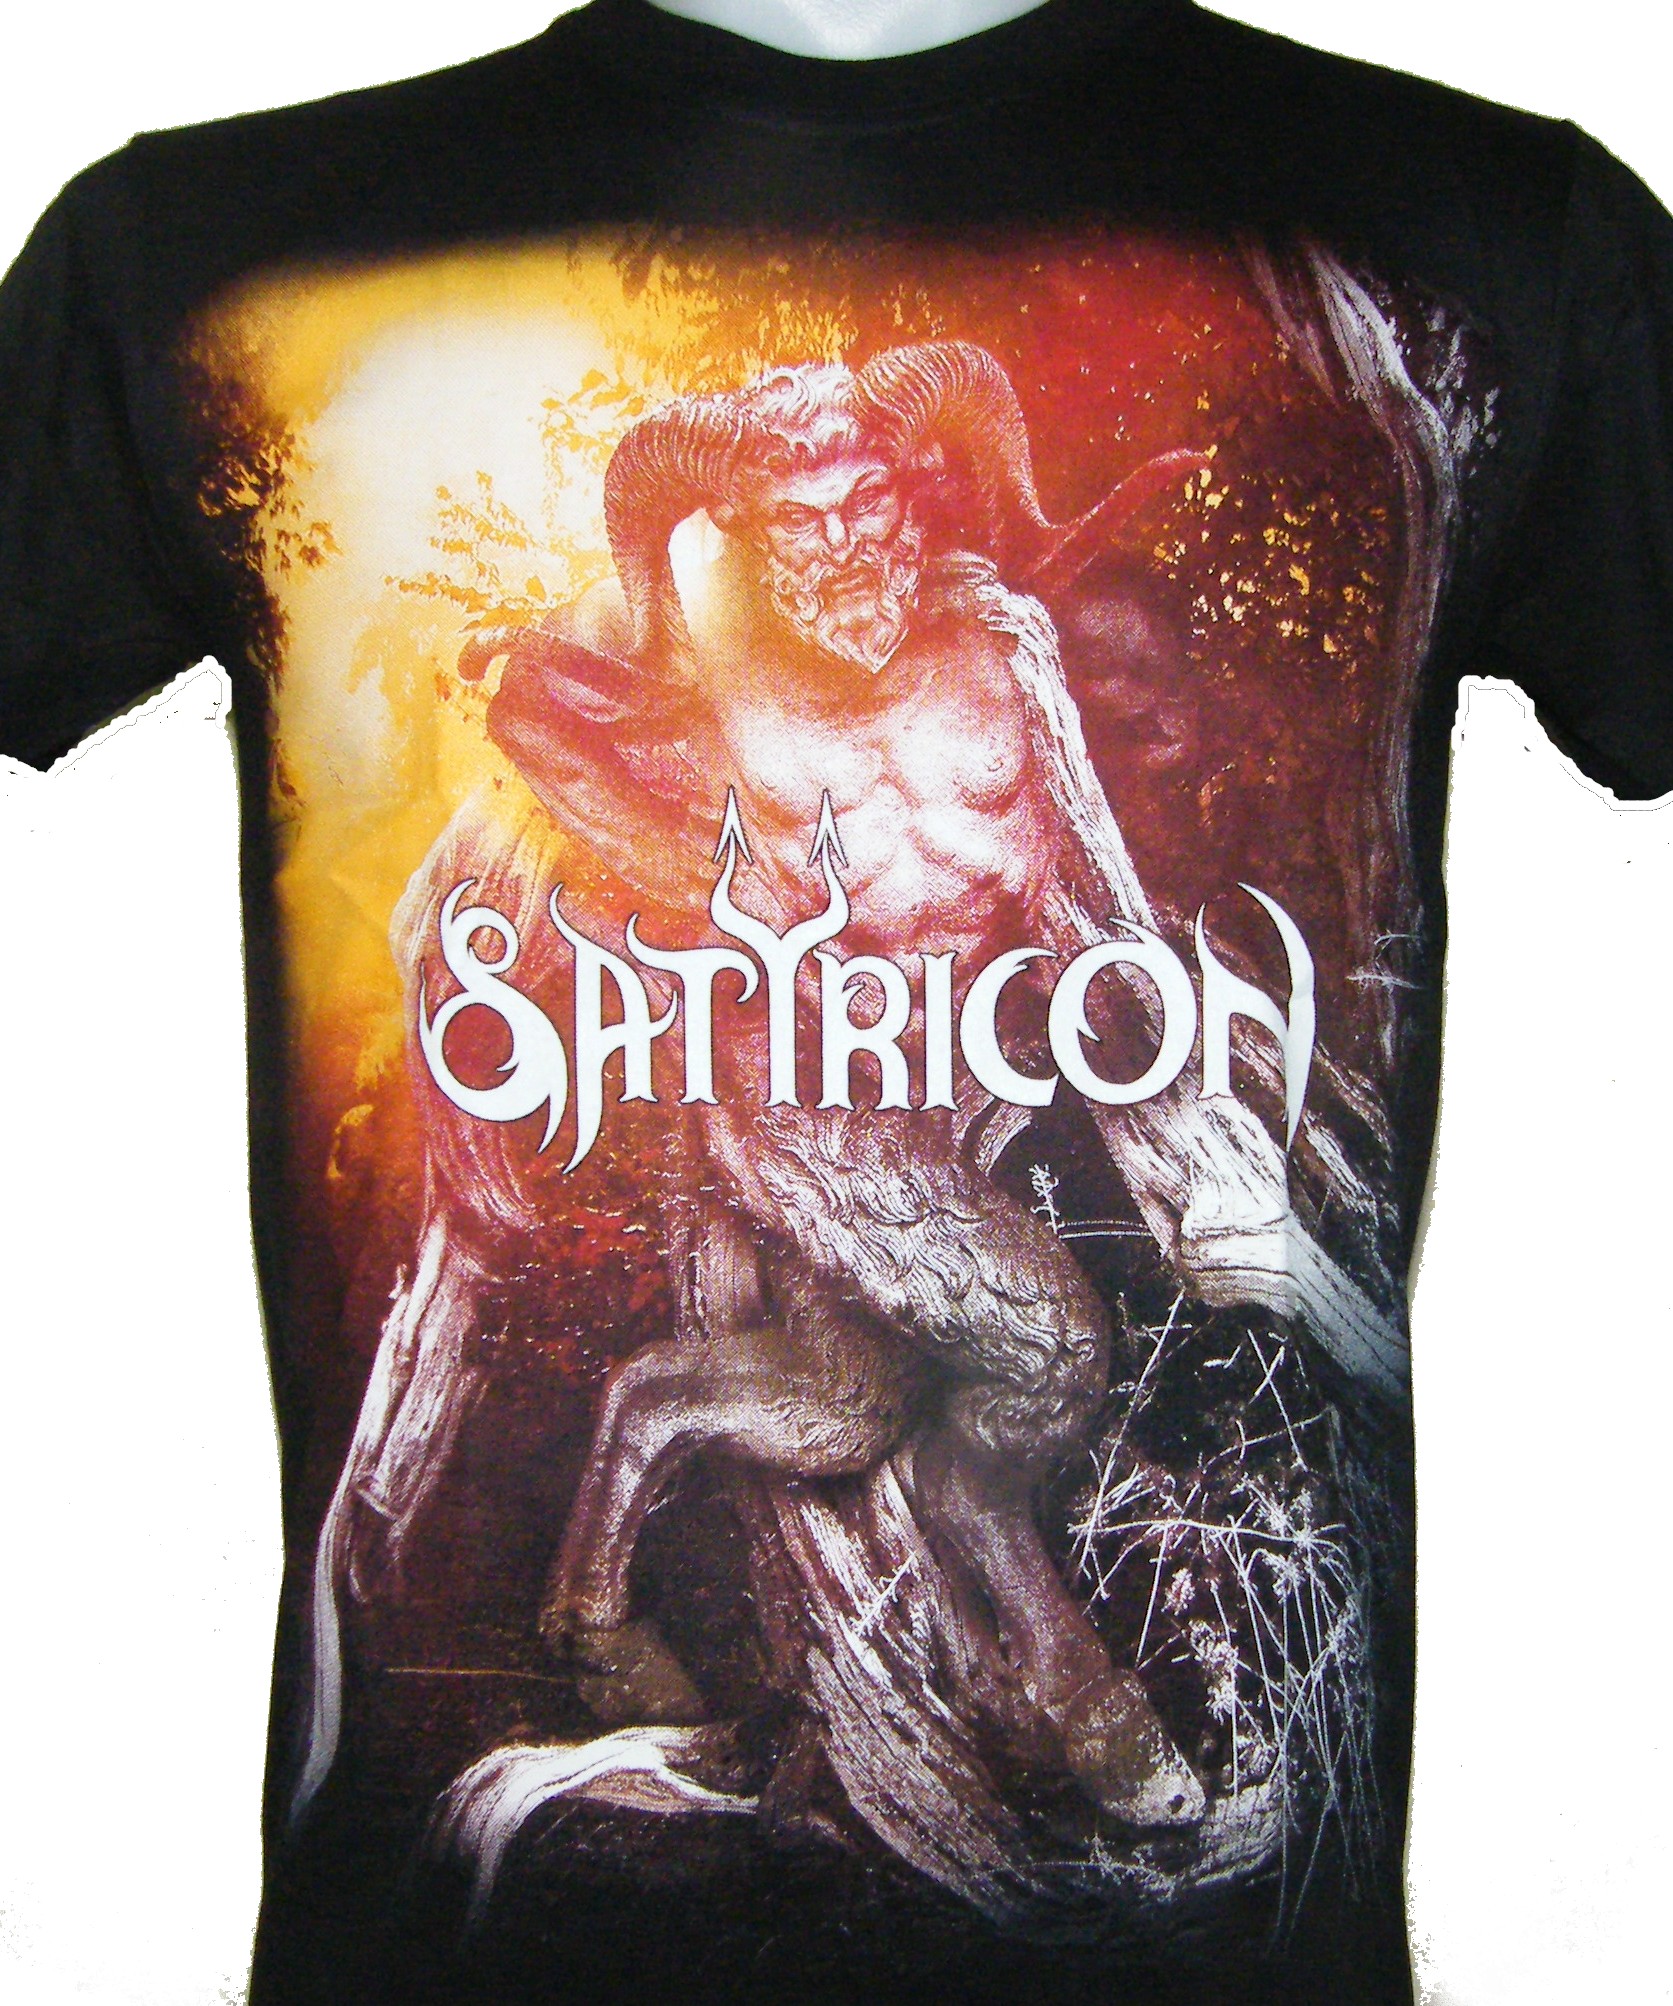 Fordampe vente privilegeret Satyricon t-shirt size XXL – RoxxBKK